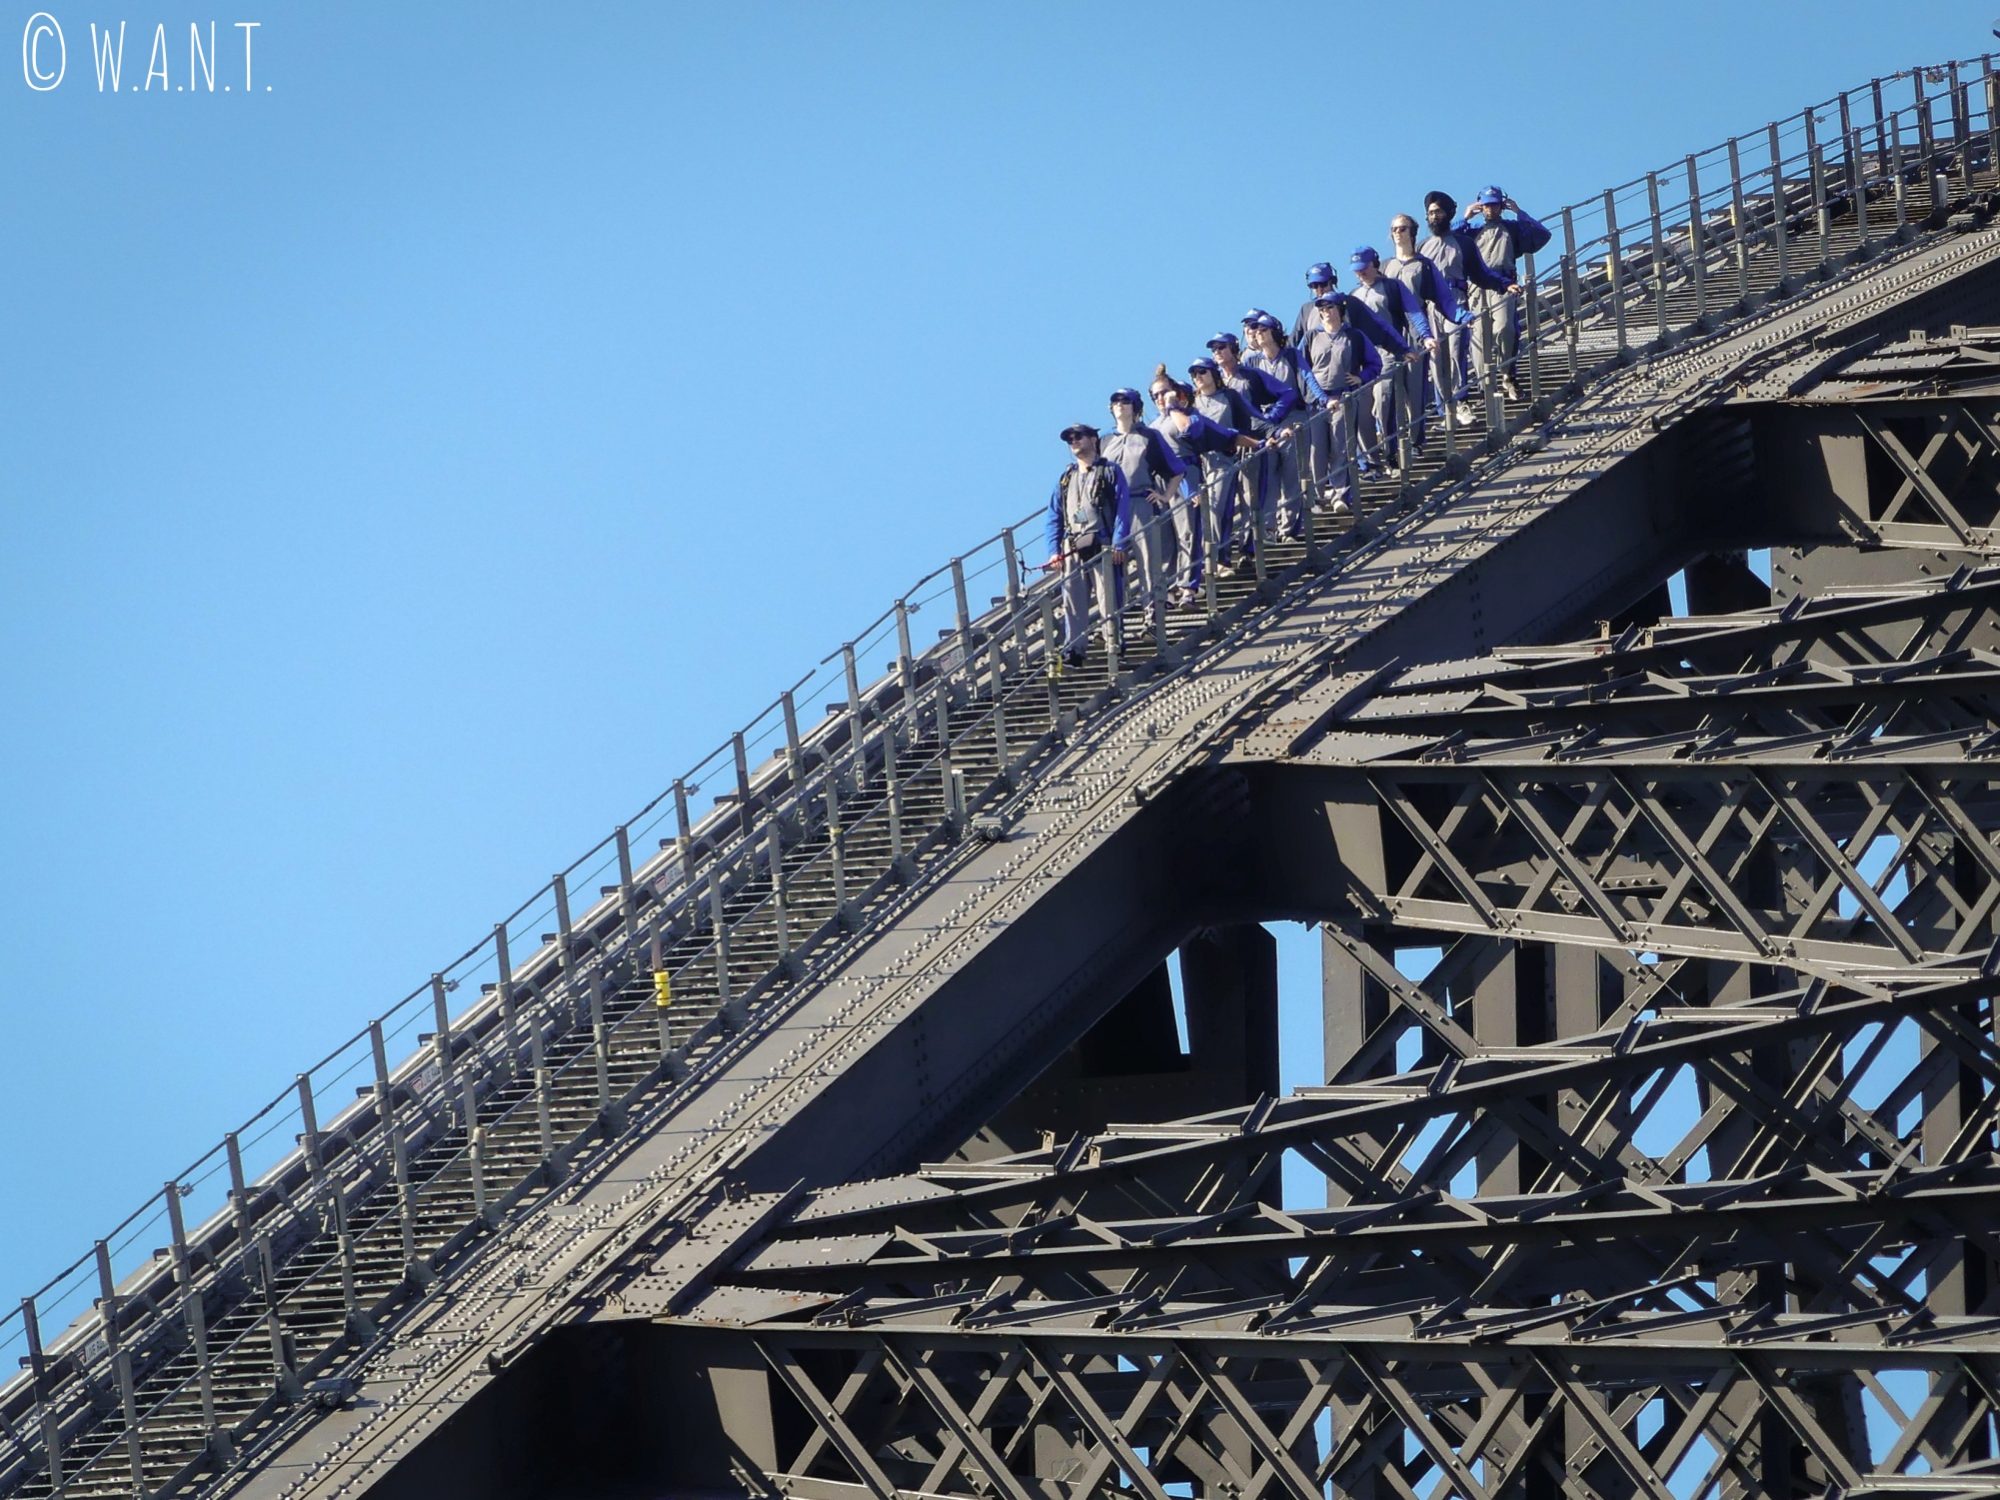 Il est possible de réaliser des activités à sensations fortes depuis Harbour Bridge à Sydney